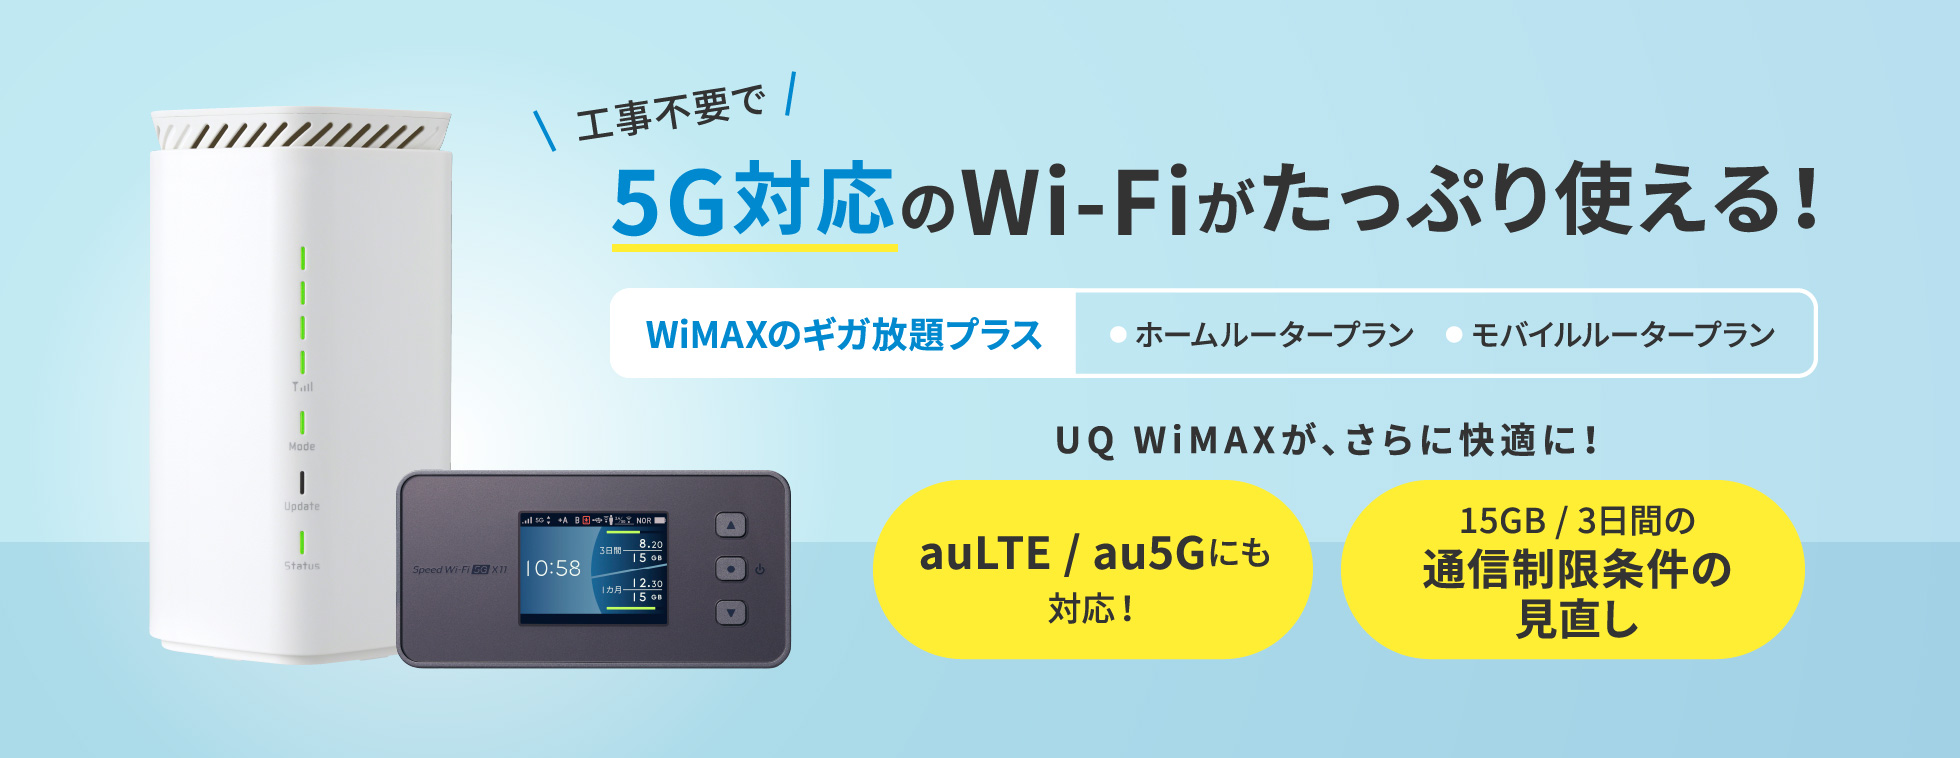 工事不要で5G対応のWi-Fiがたっぷり使える！WiMAXのギガ放題プラス● ホームルータープラン　● モバイルルータープラン UQ WiMAXが、さらに快適に！ auLTE / au5Gにも対応！ 15GB / 3日間の通信制限条件の見直し